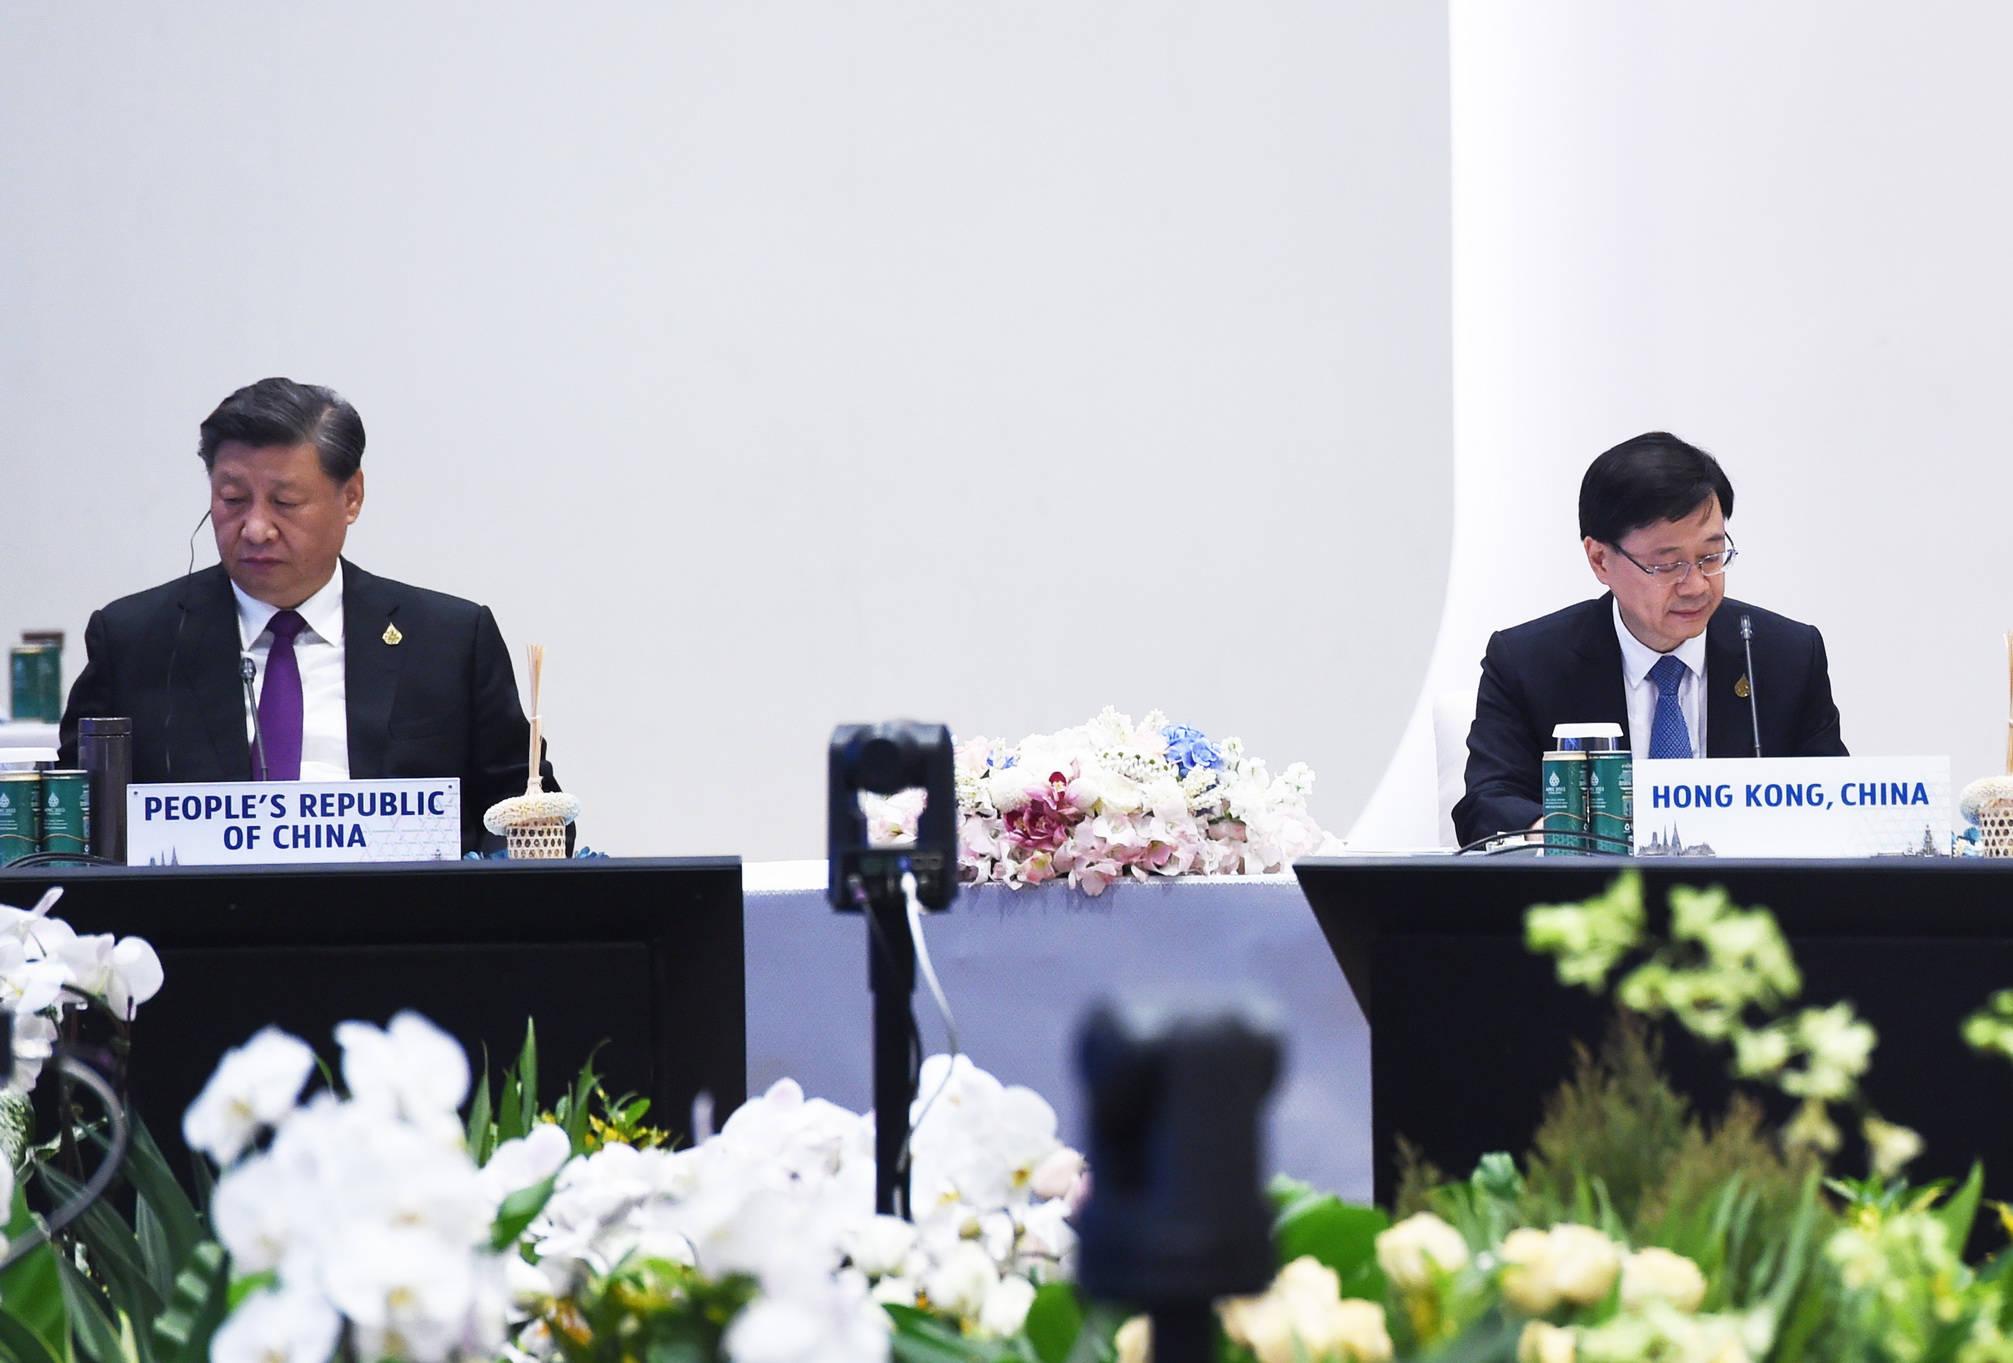 ประธานาธิบดีจีน นายสี จิ้นผิง (ซ้าย) นั่งข้างประธานคณะผู้บริหารฮ่องกง นายจอห์น ลี ระหว่างการประชุมสุดยอดเอเปค 2022 ที่กรุงเทพมหานคร เมื่อวันที่ 18 พ.ย. 2565